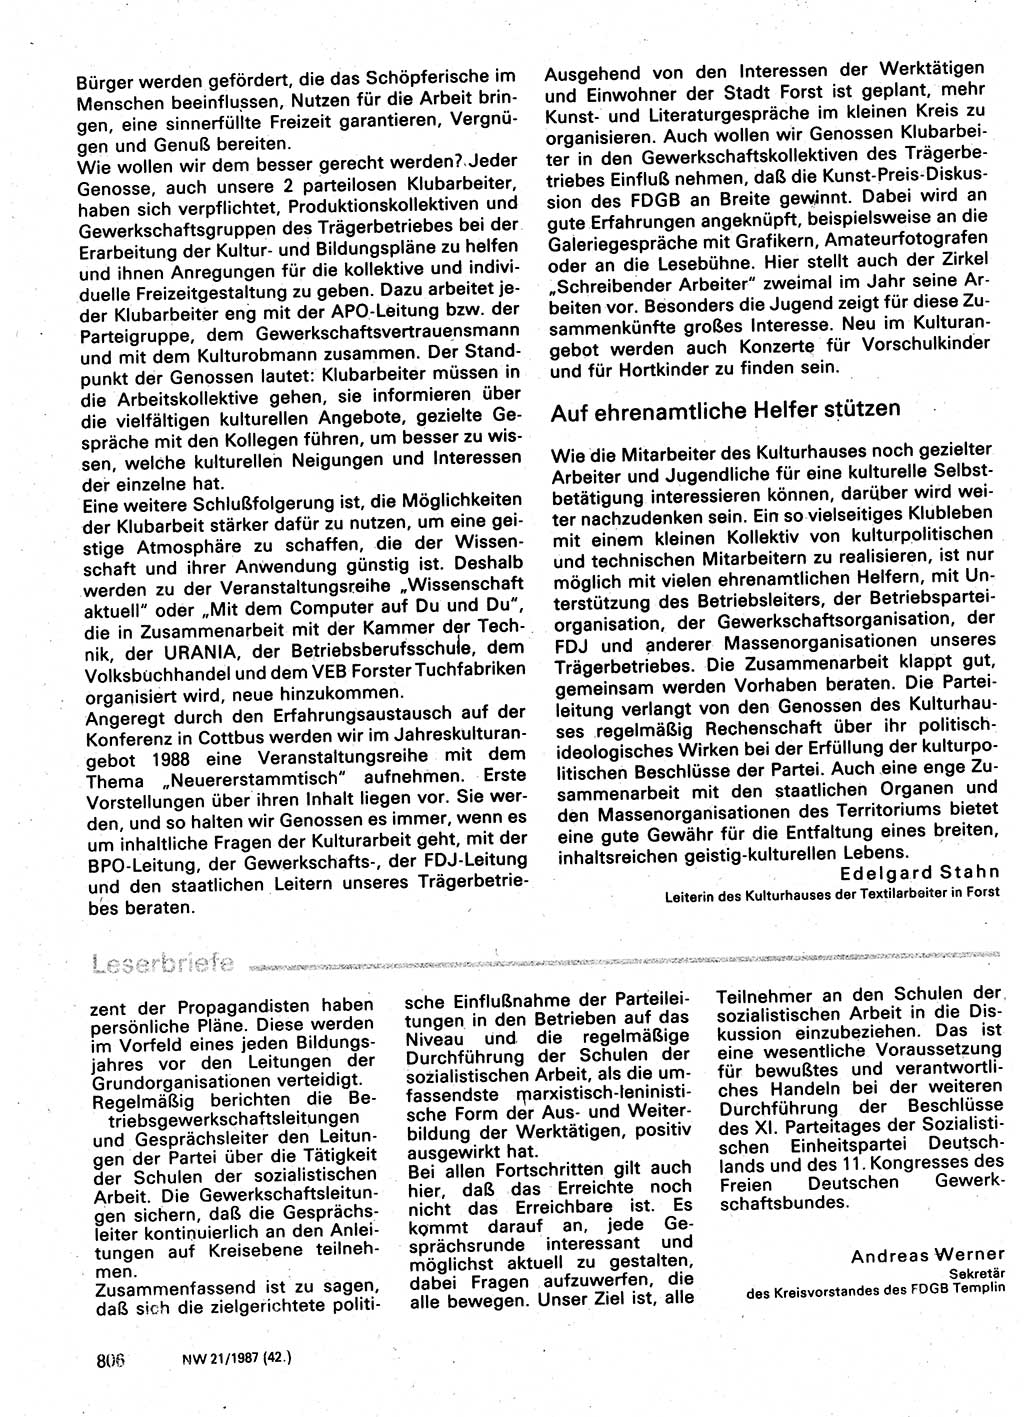 Neuer Weg (NW), Organ des Zentralkomitees (ZK) der SED (Sozialistische Einheitspartei Deutschlands) für Fragen des Parteilebens, 42. Jahrgang [Deutsche Demokratische Republik (DDR)] 1987, Seite 806 (NW ZK SED DDR 1987, S. 806)